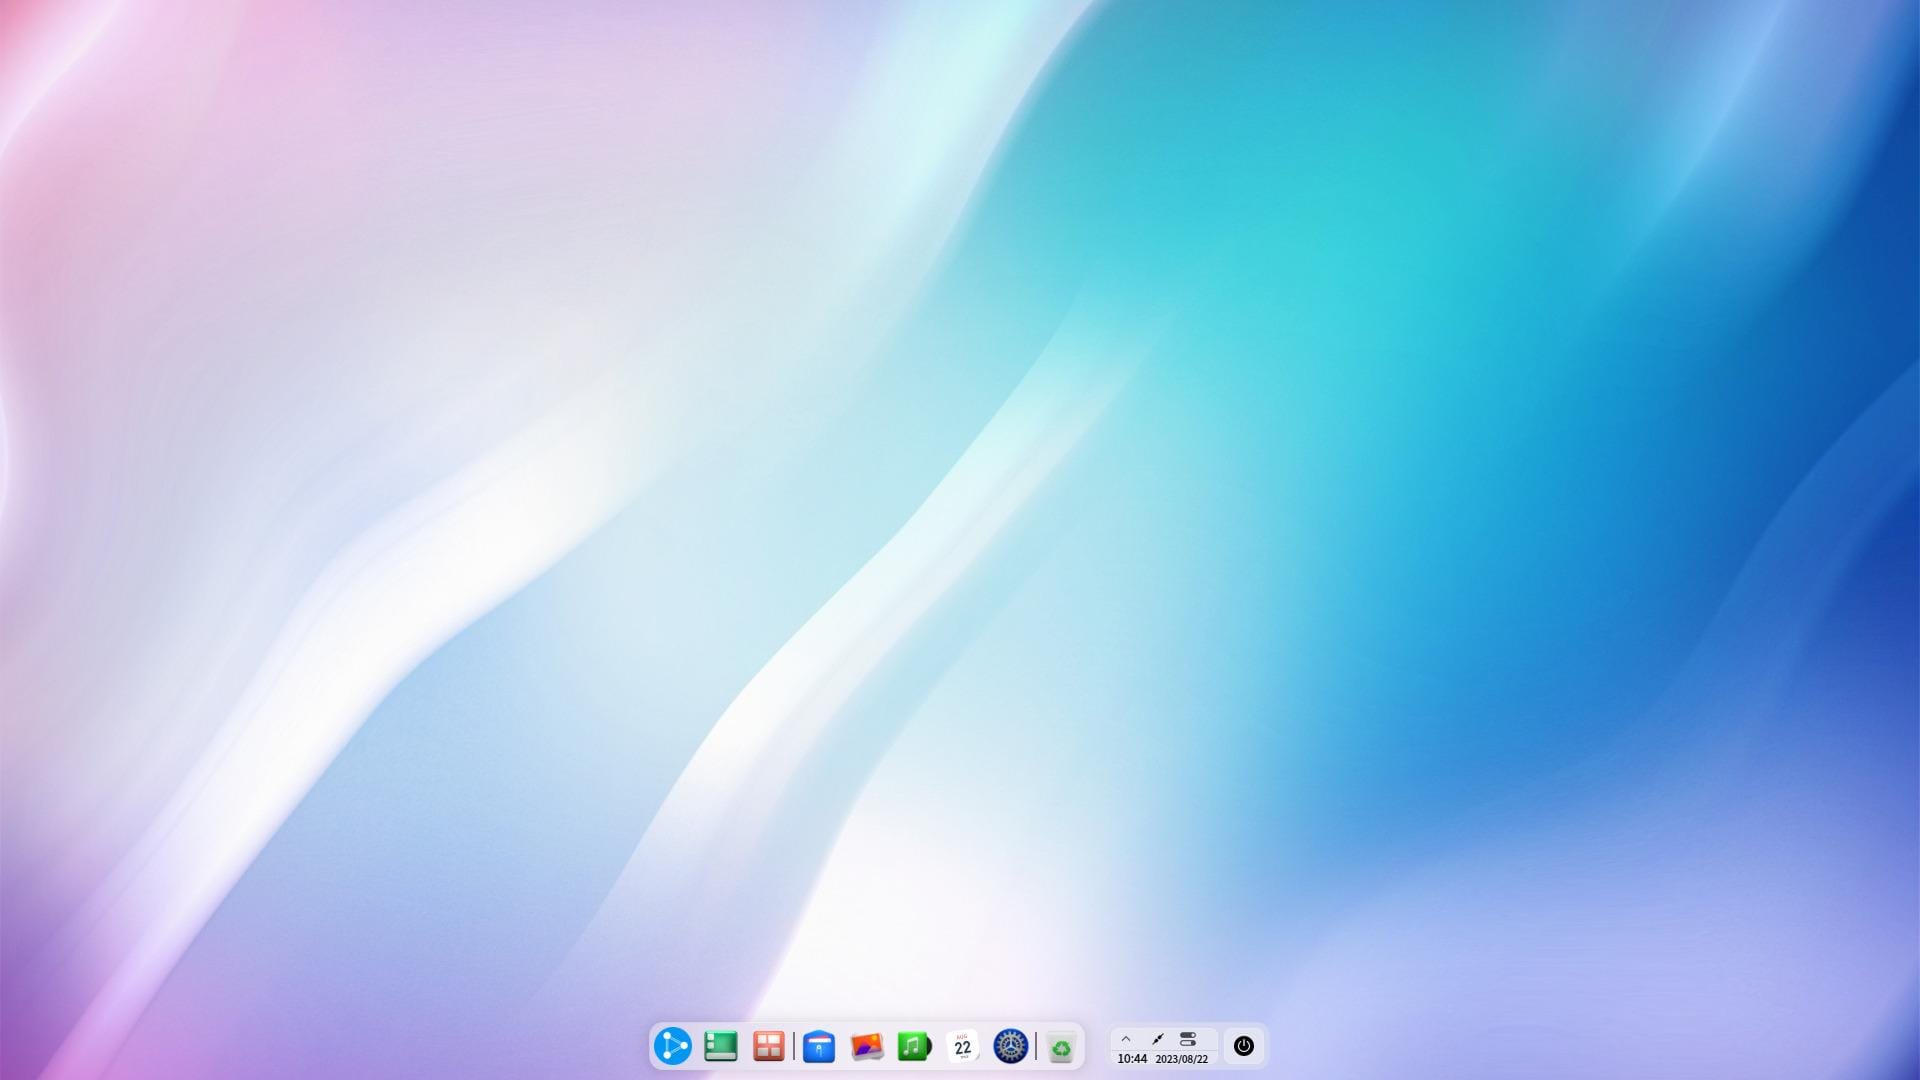 a screenshot of the ubuntudde remix desktop